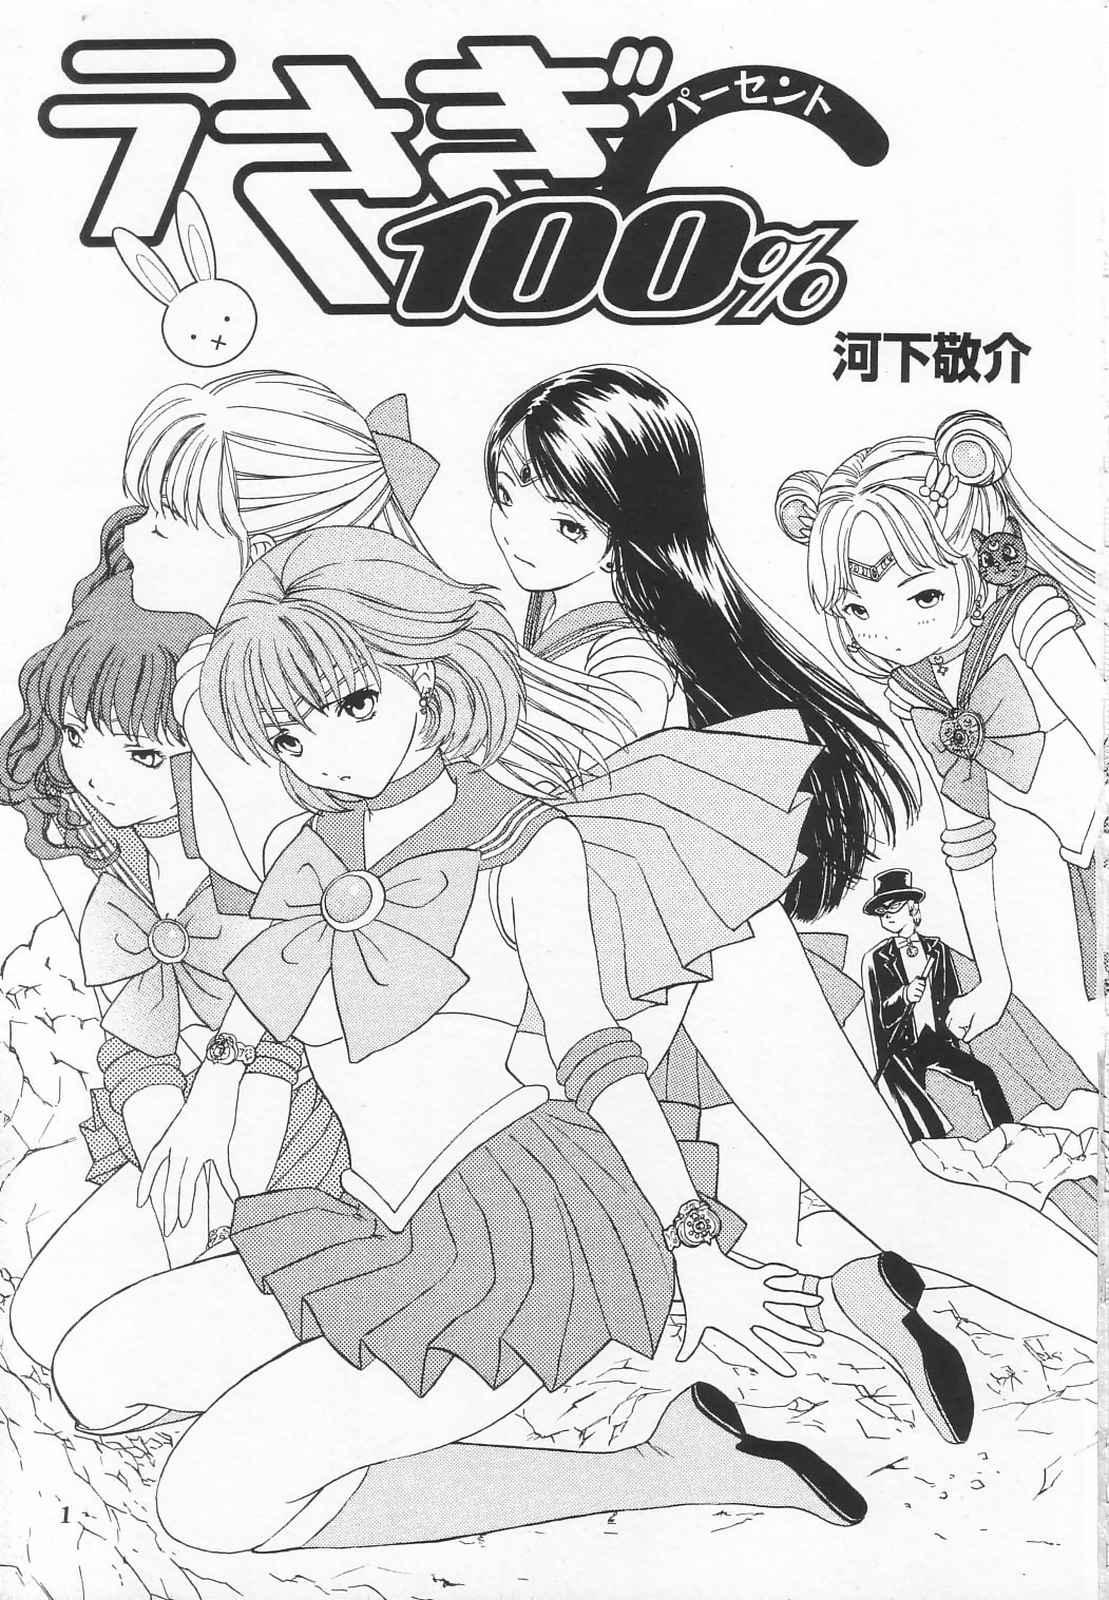 Ass Tokusatsu Magazine x 2003 Fuyu Gou - Sailor moon Ichigo 100 Costume - Page 3